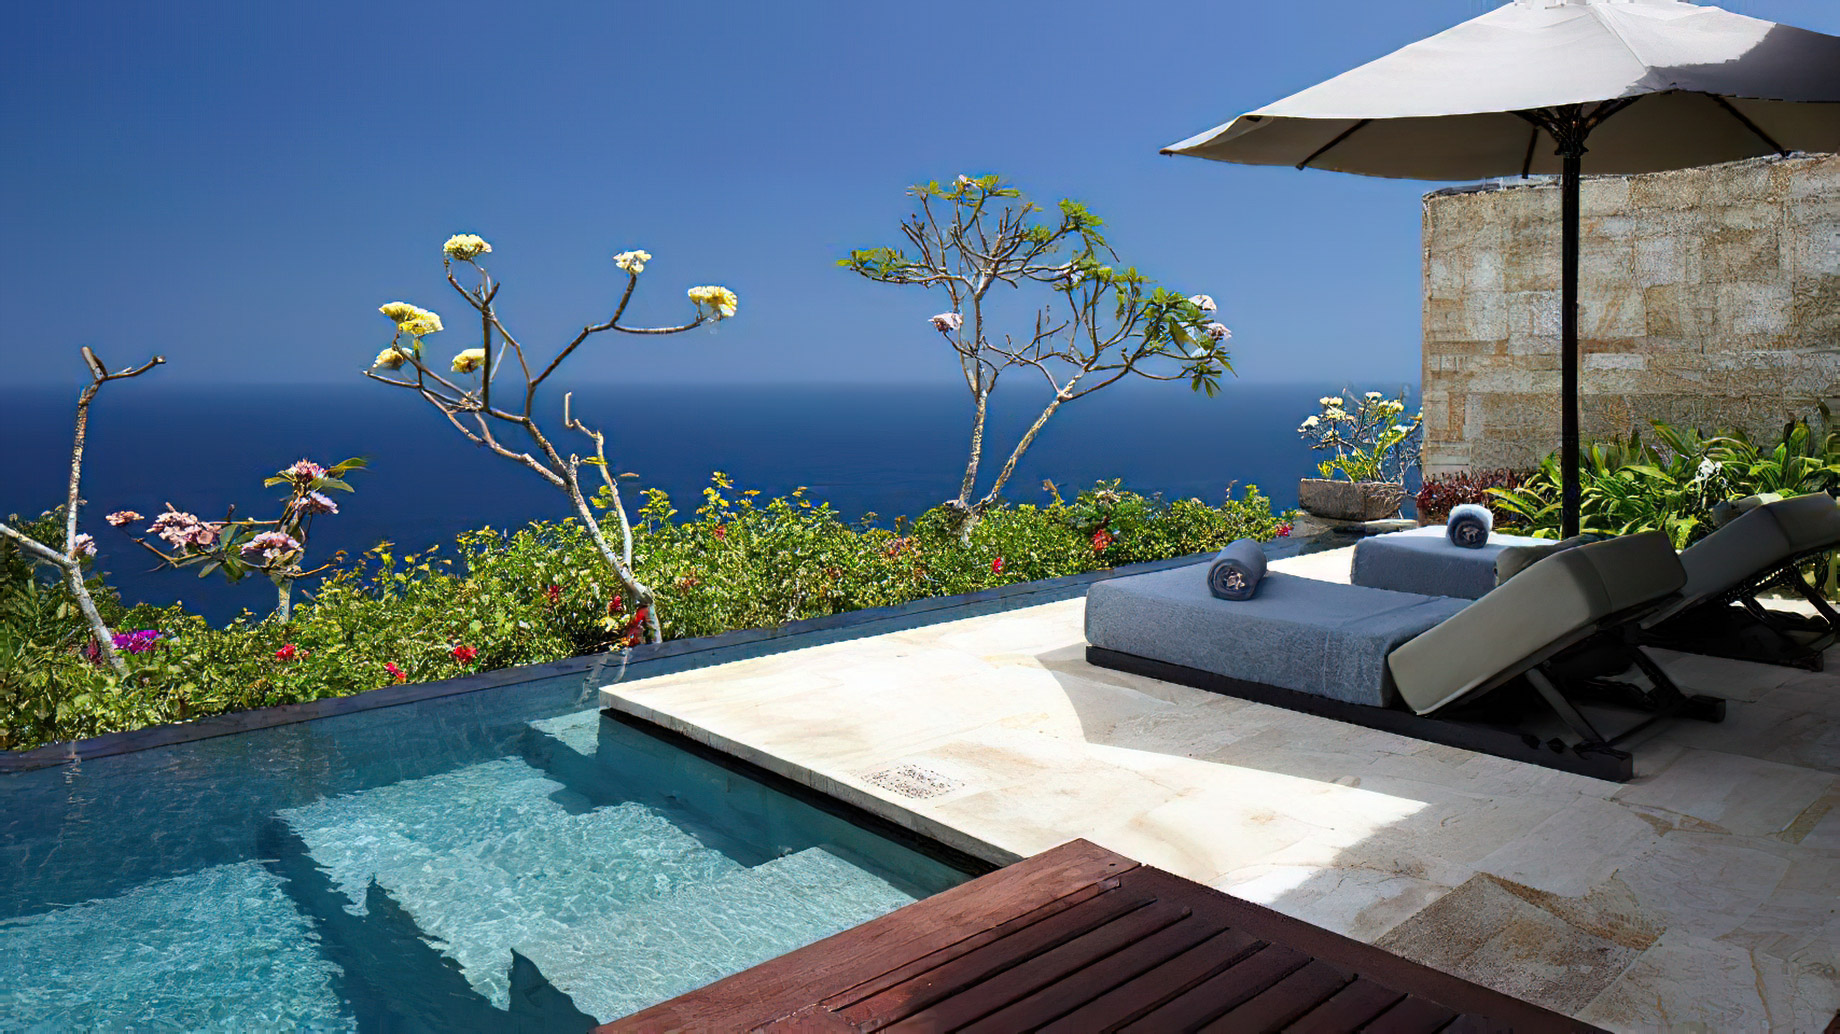 Bvlgari Resort Bali – Uluwatu, Bali, Indonesia – Ocean Cliff Villa Pool Deck Ocean View